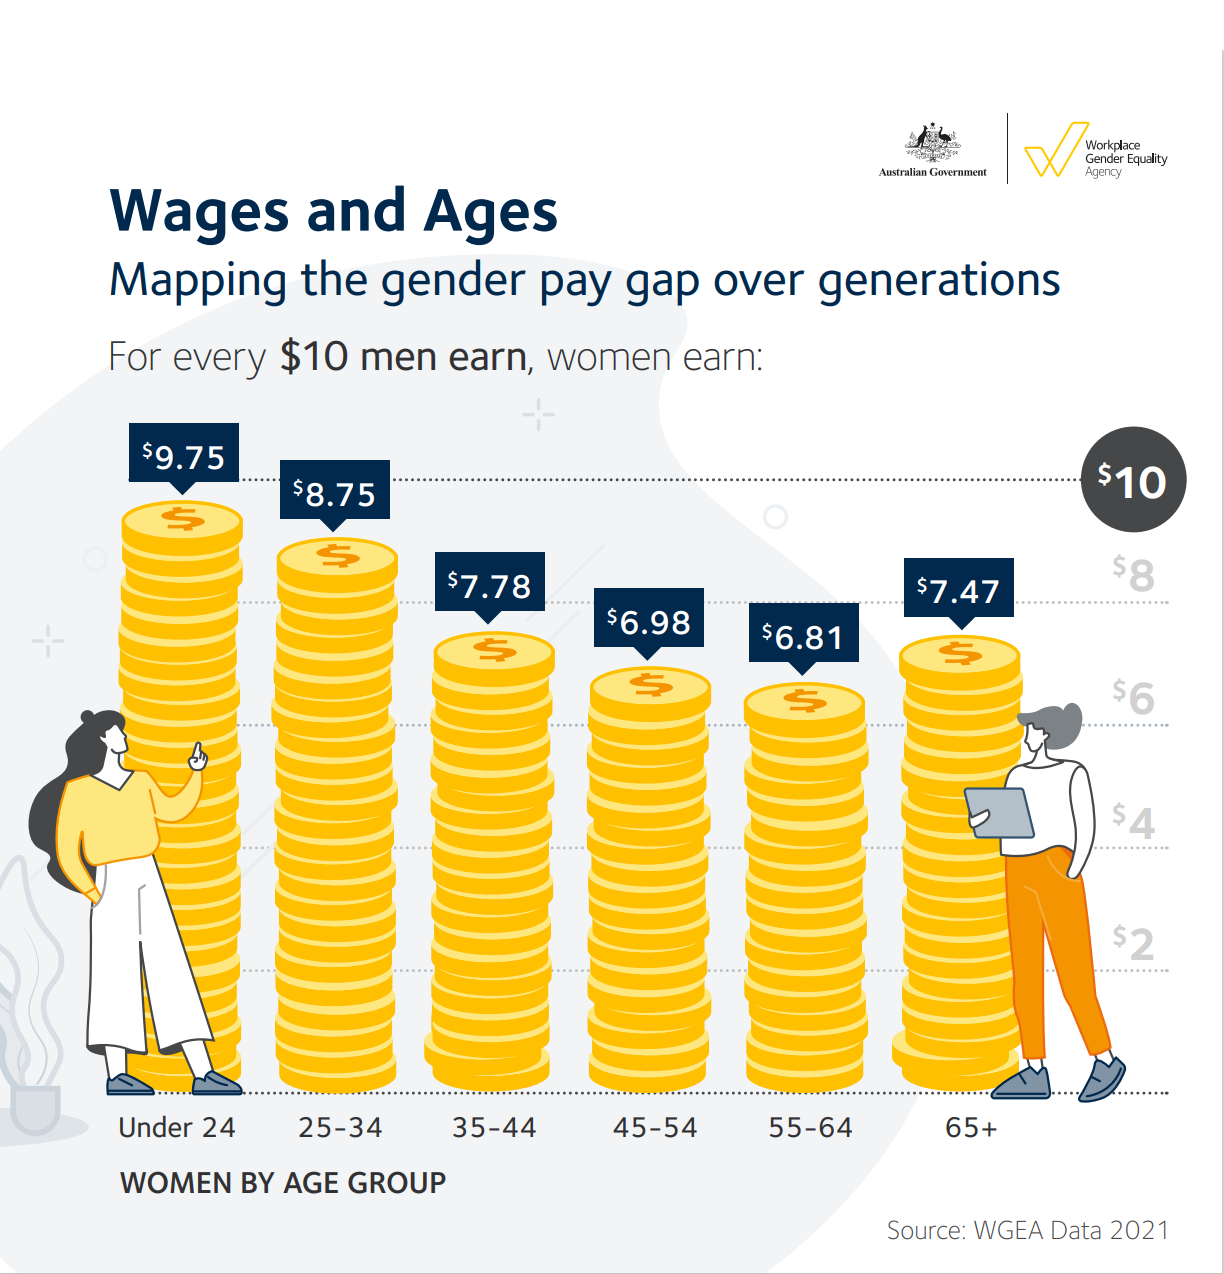 Eine Grafik mit Goldmünzen als Graphen, die zeigt, wie viel Geld Frauen in verschiedenen Altersgruppen im Vergleich zu 10 $ von Männern verdienen. 